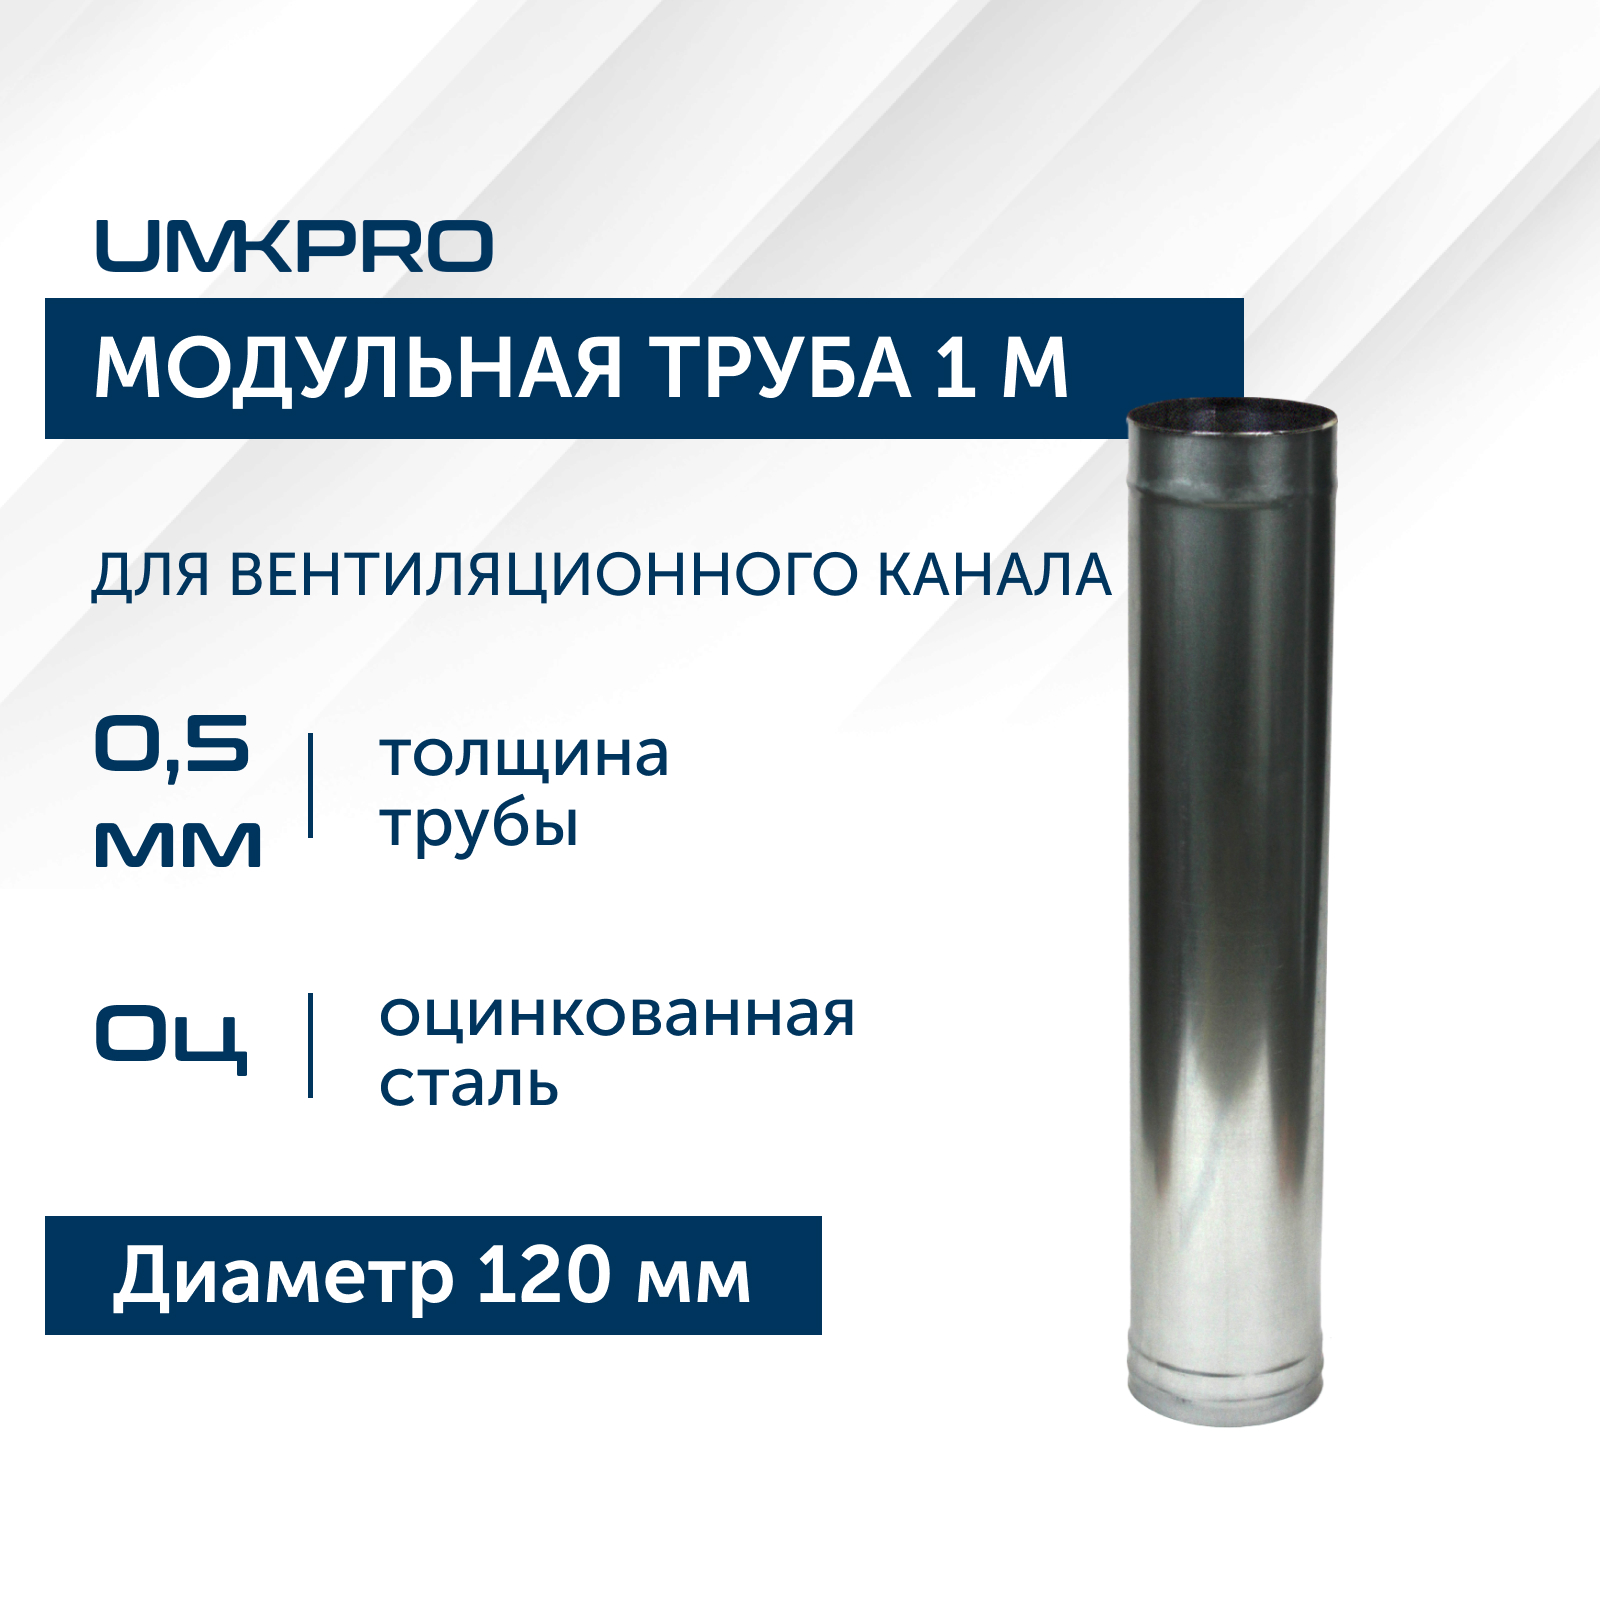 Труба модульная для дымохода 1 м UMKPRO D 120, Оц/0,5мм кухня модульная сомелье массив